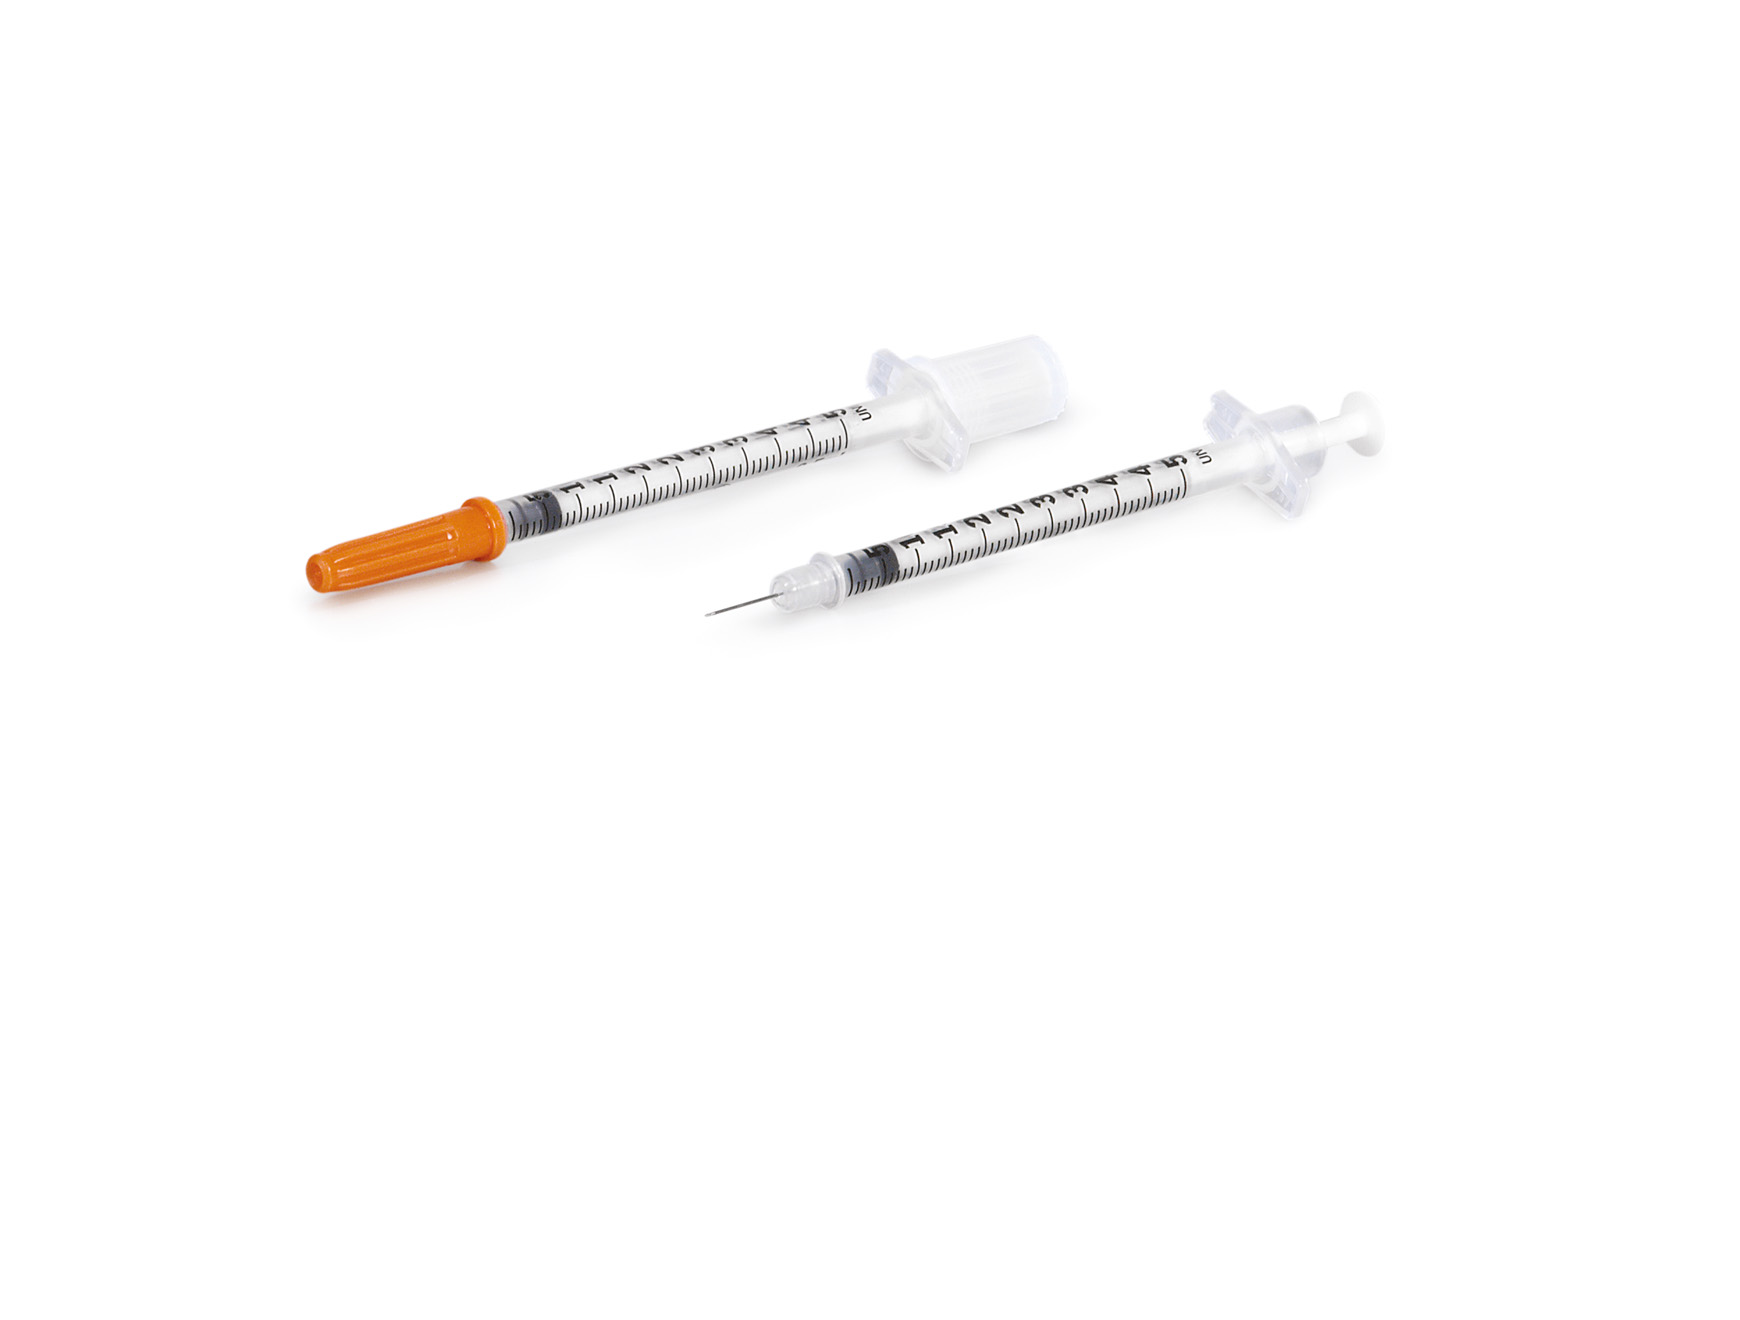 BD Microfine insuline seringues 0,5ml avec aiguille 29GX1 12,7mm